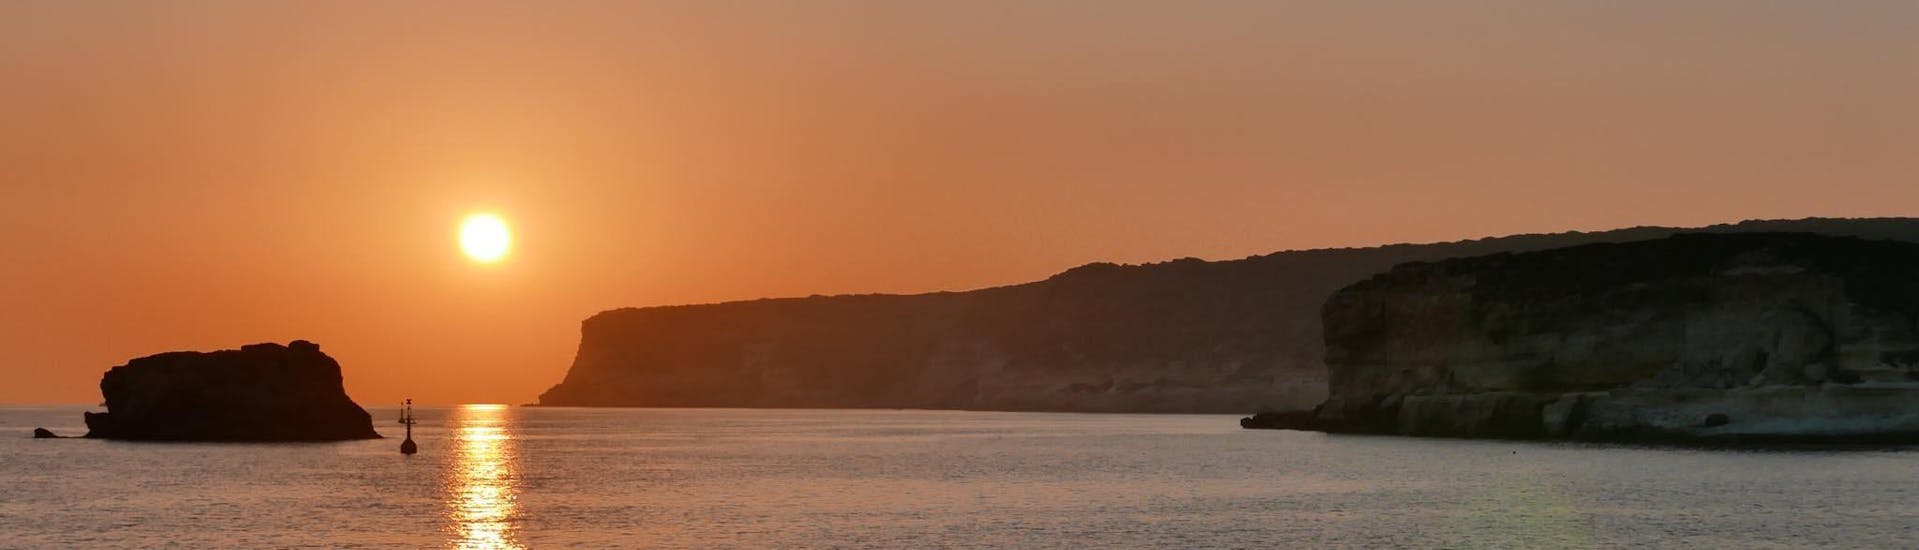 Sonnenuntergang über dem Sitz in Lampedsa während Sunset Boat Trip rund um Lampedusa mit Abendessen mit Gita in Barca Liliana lampedusa.